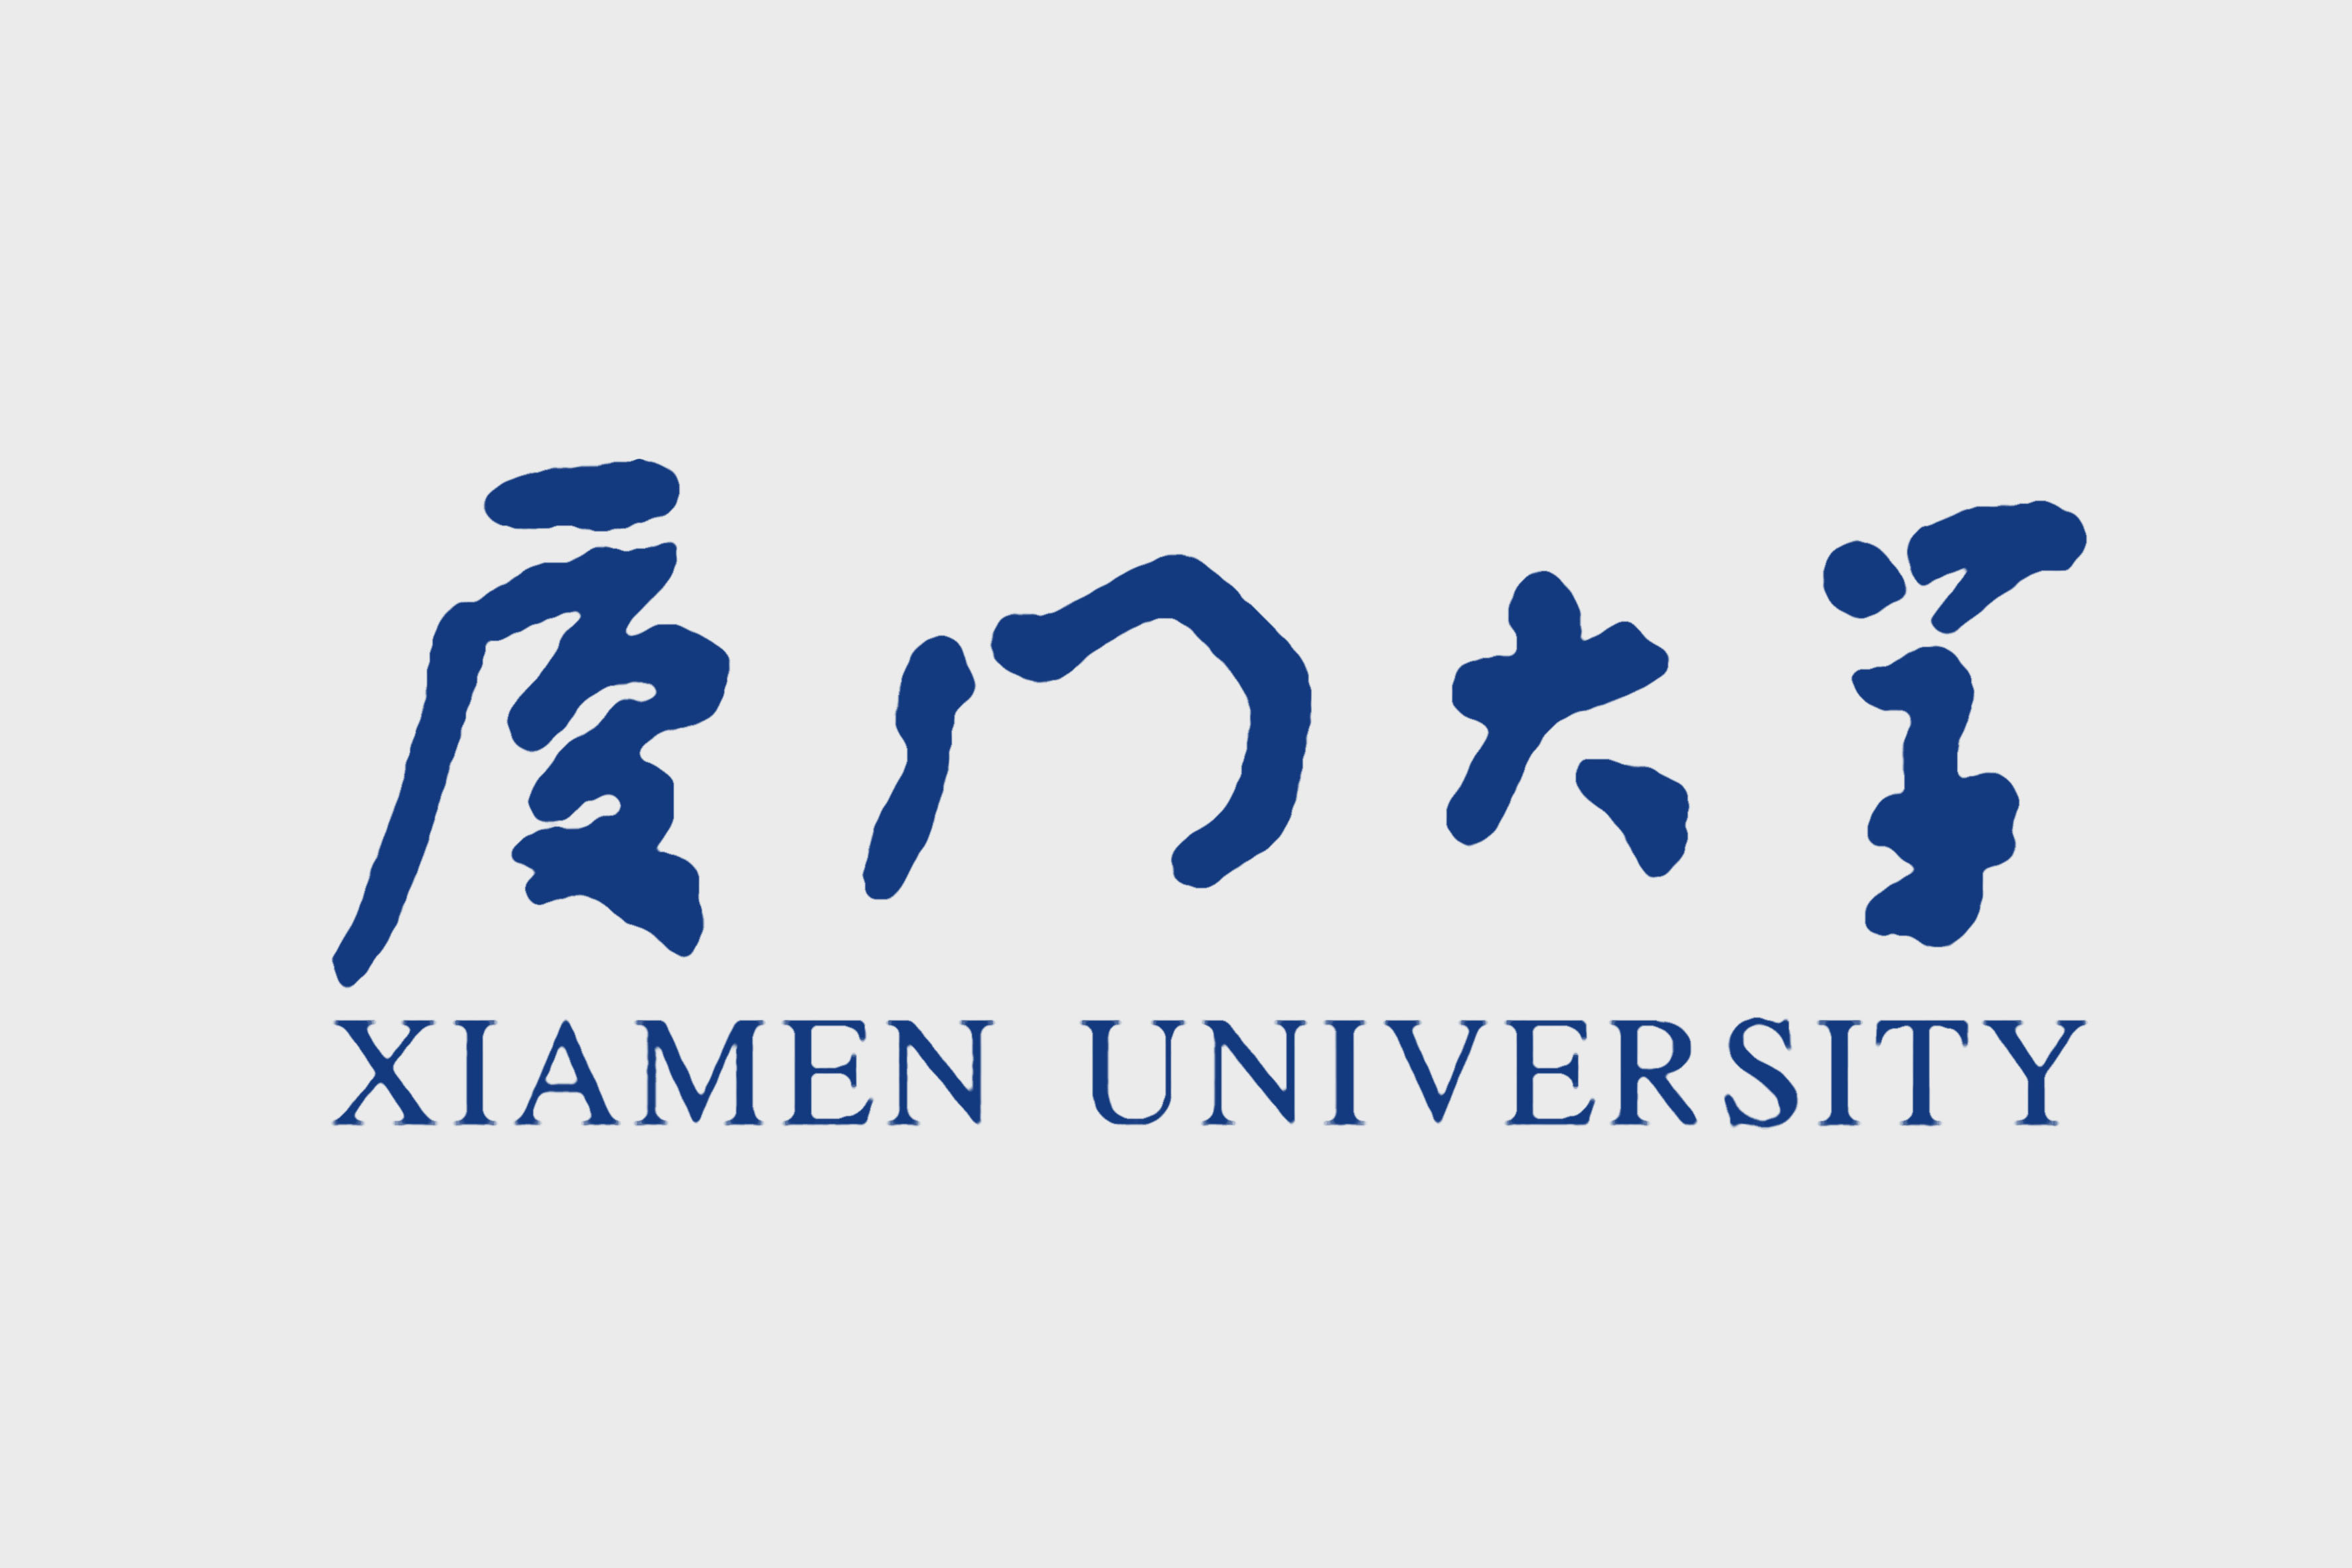 厦门大学校徽的"厦门大学"logo字体曾一度延用其手写字体,除了logo